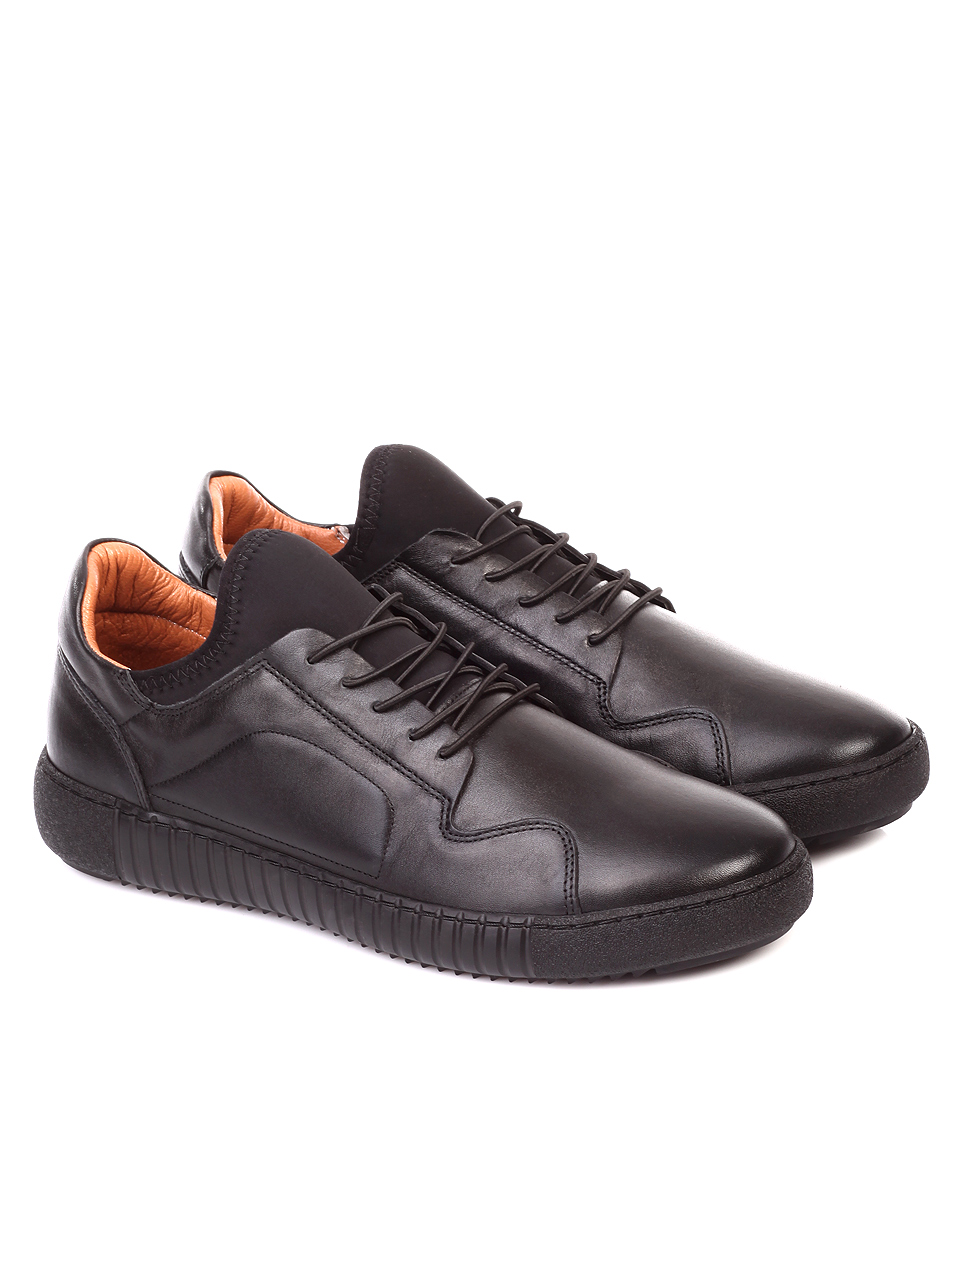 Ежедневни мъжки обувки от естествена кожа 7AT-181104 black